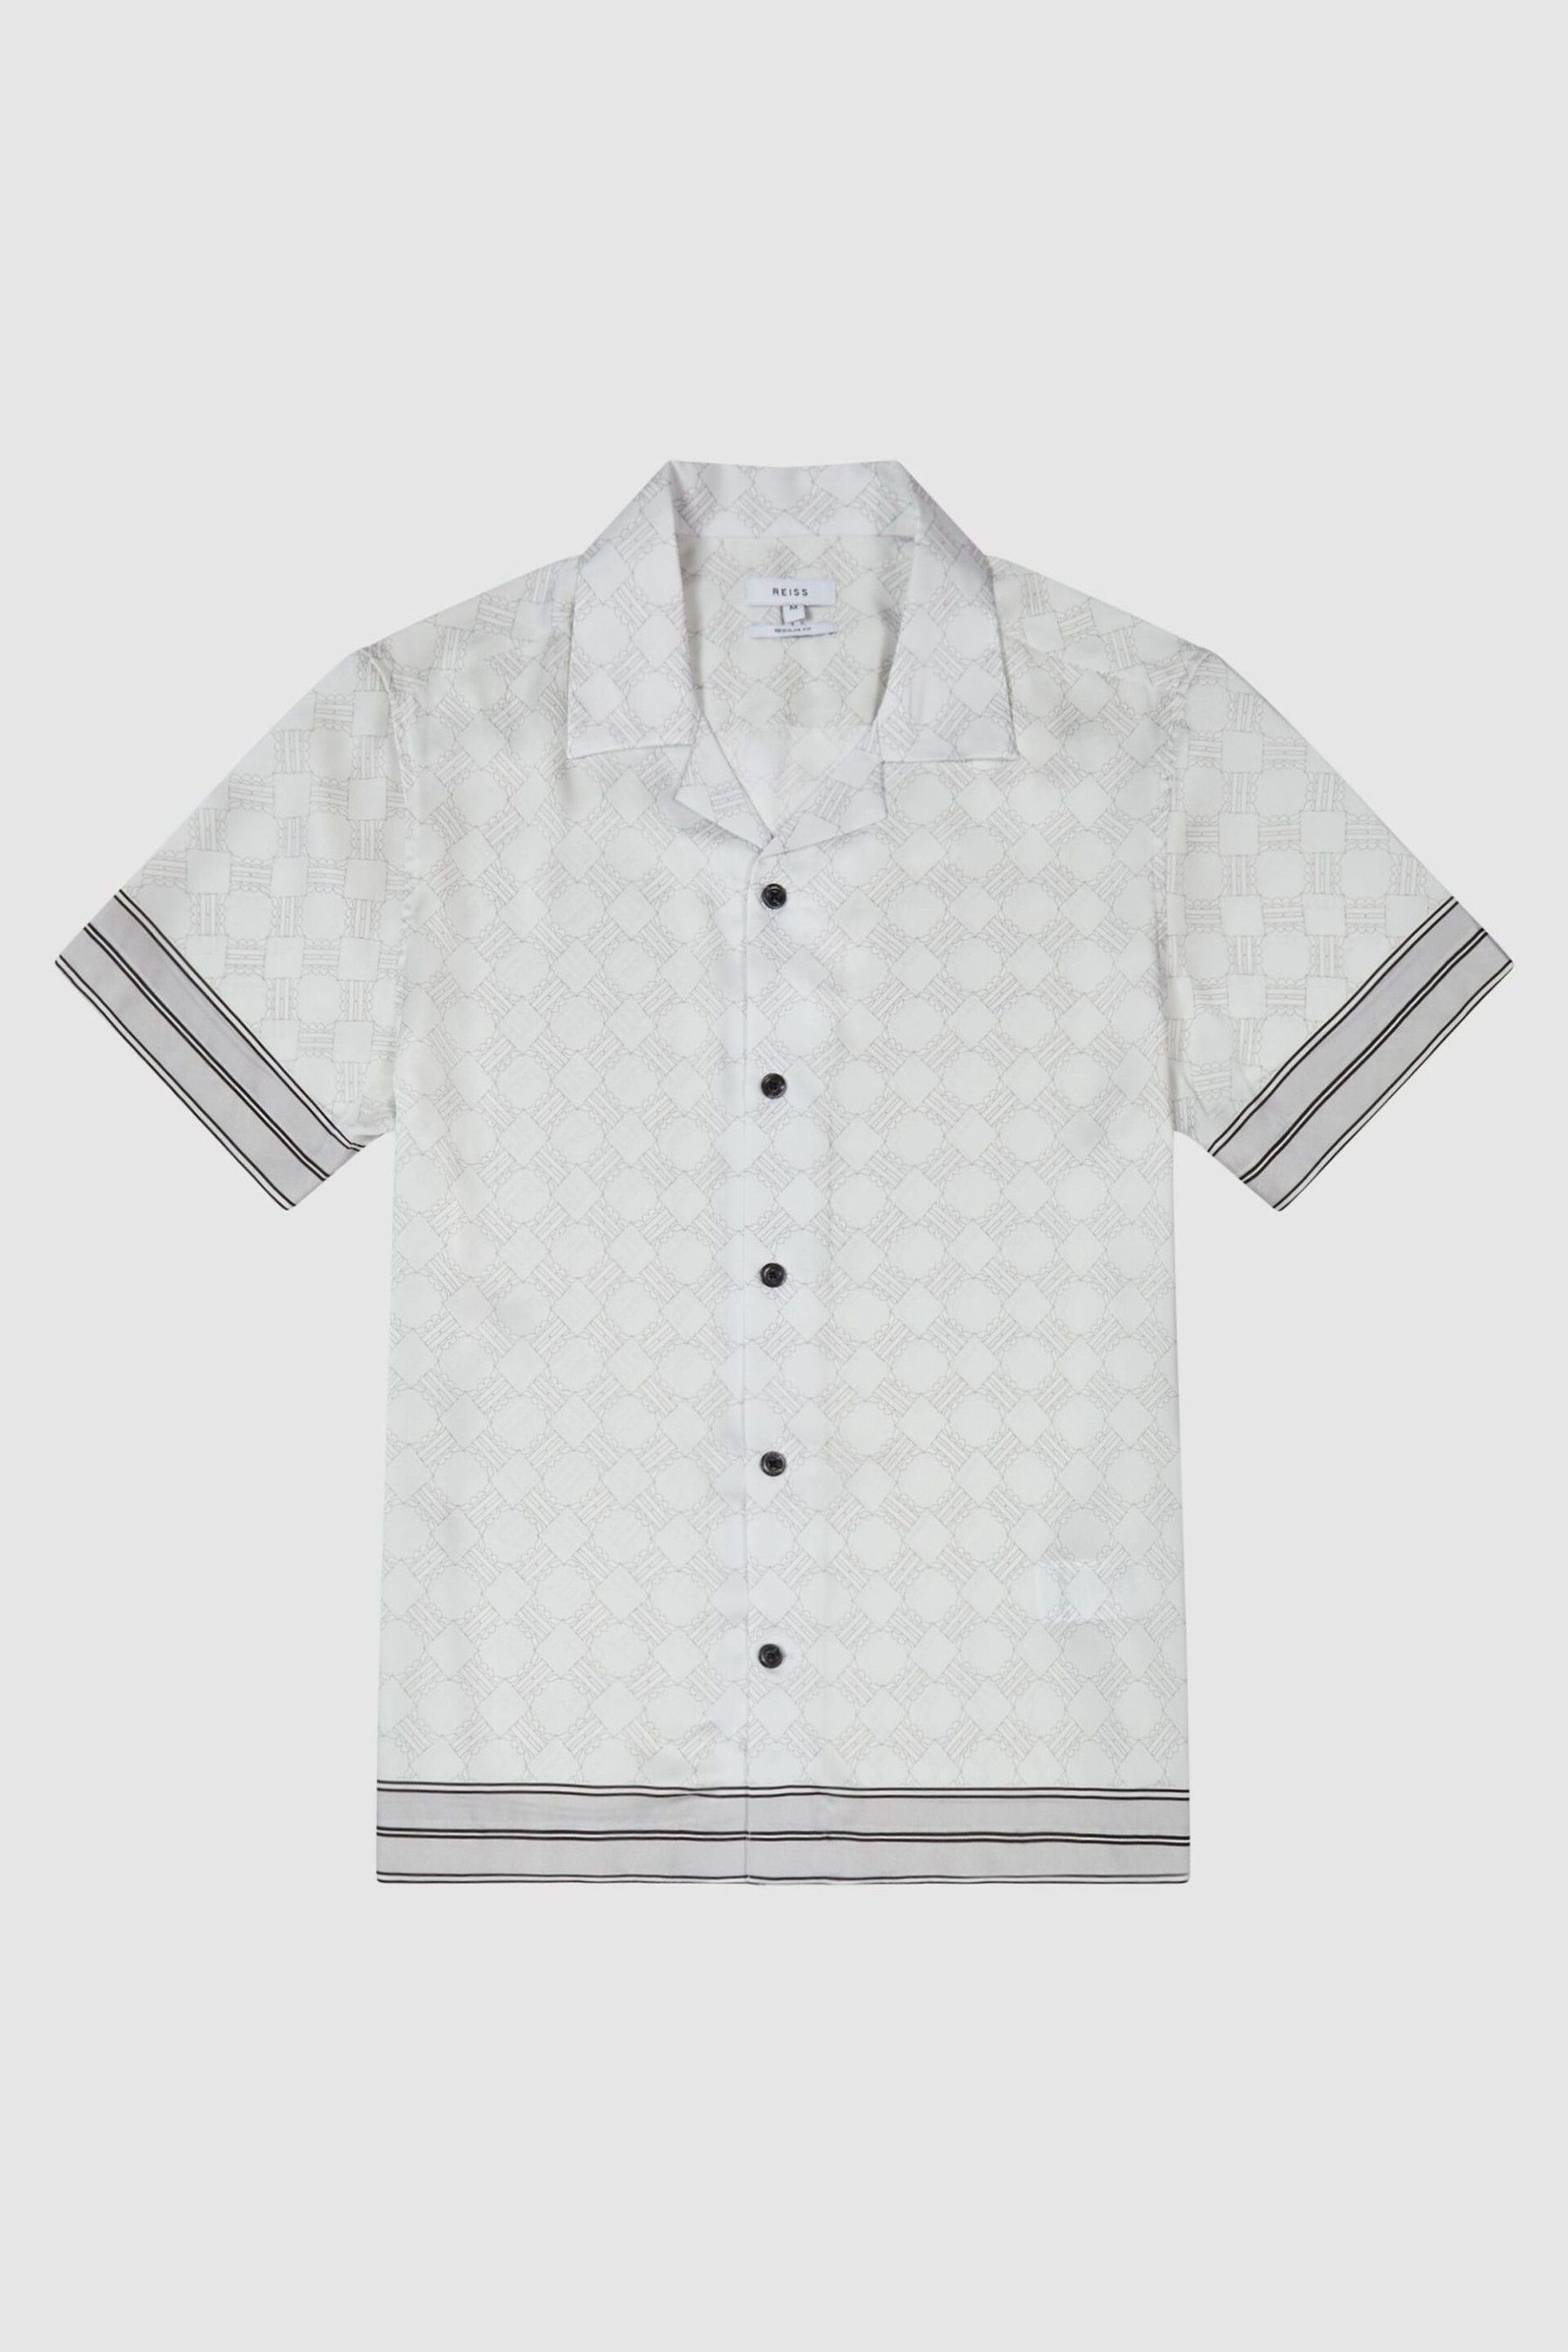 Reiss Soft Grey Suarez Bloom Print Cuban Collar Shirt - Image 2 of 5